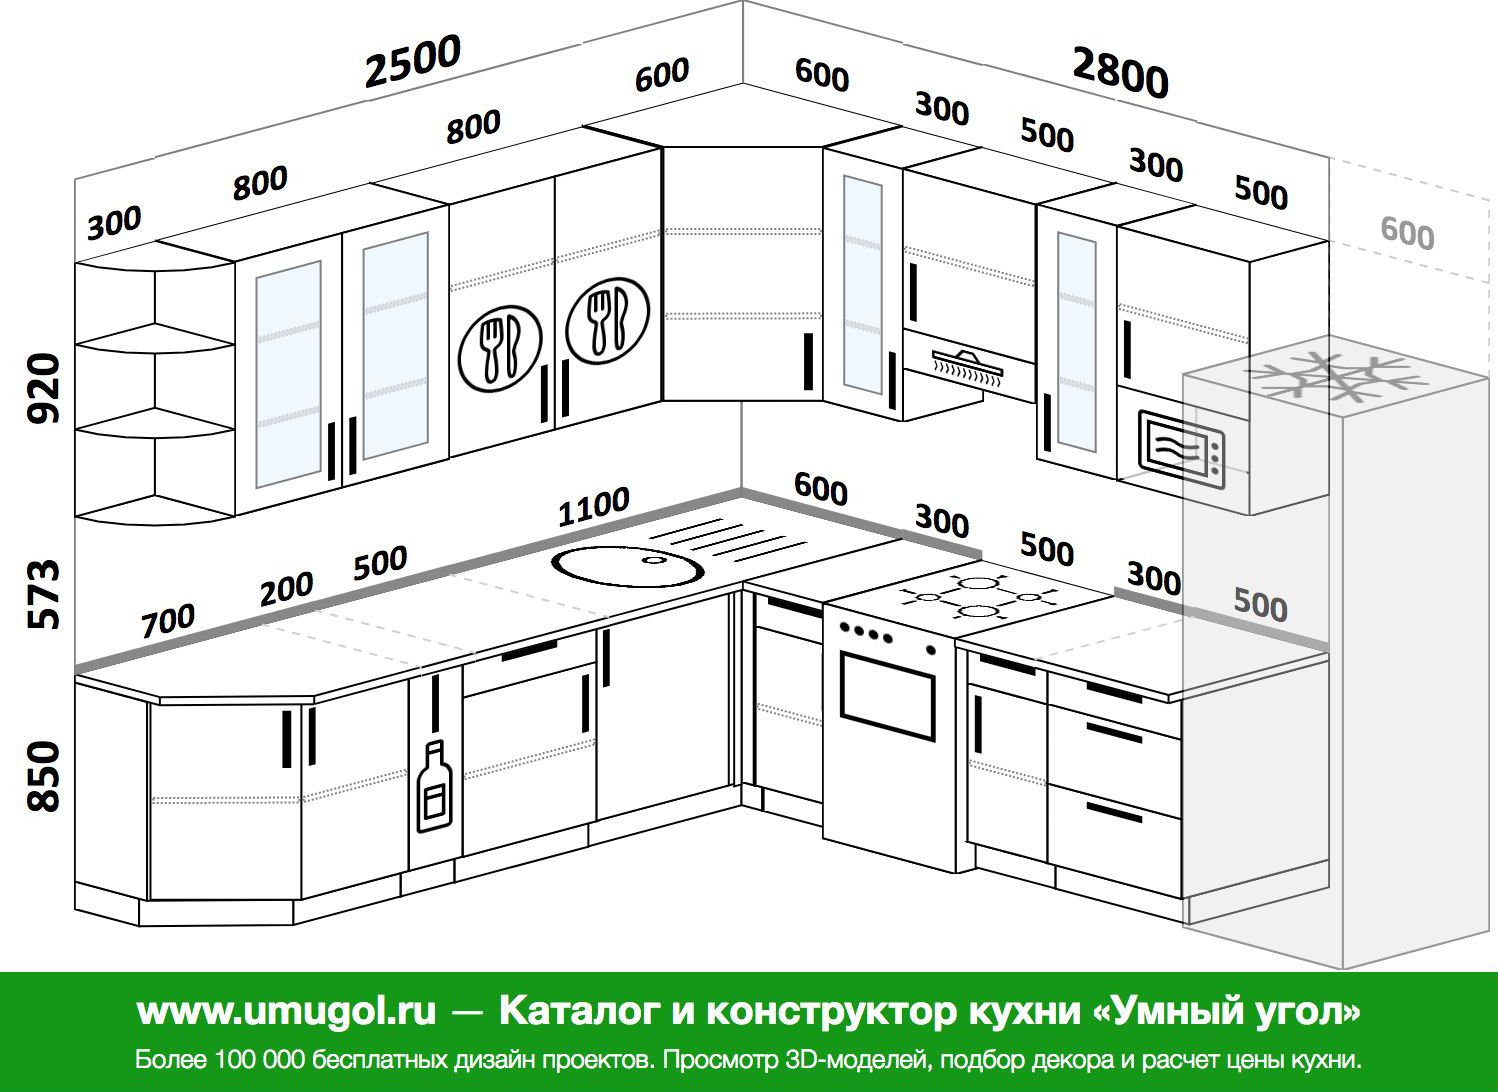 размеры кухонной мебели и техники